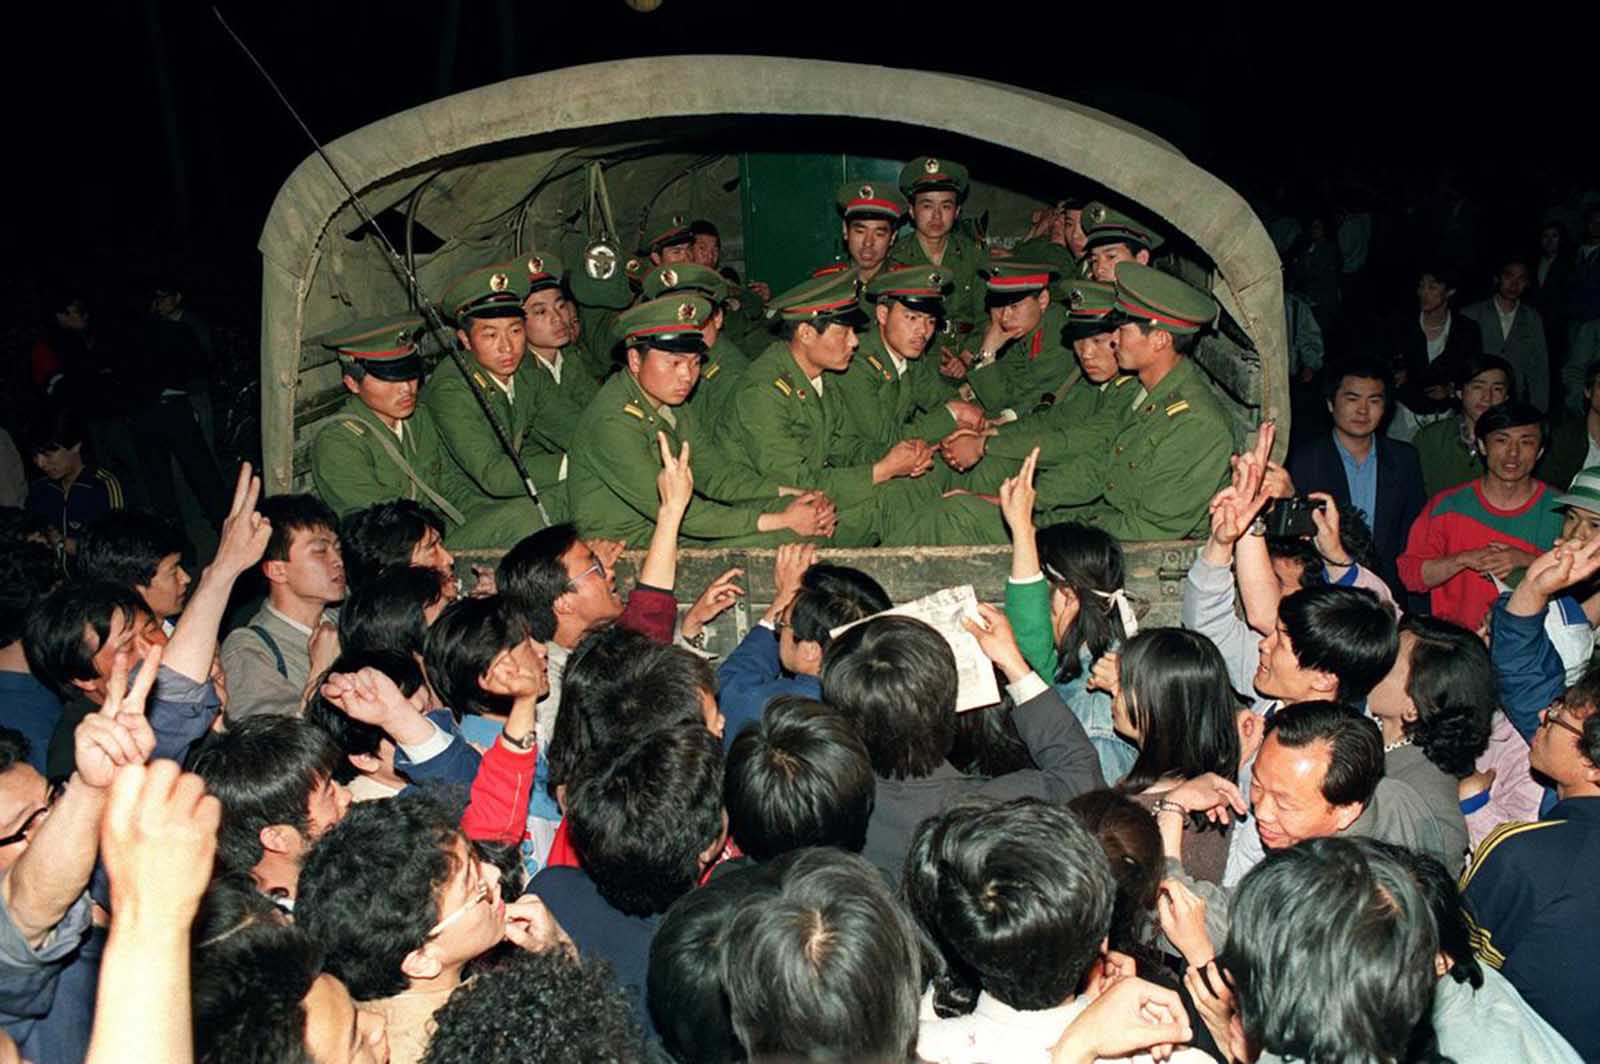 Les manifestations de la Place Tiananmen en images, 1989